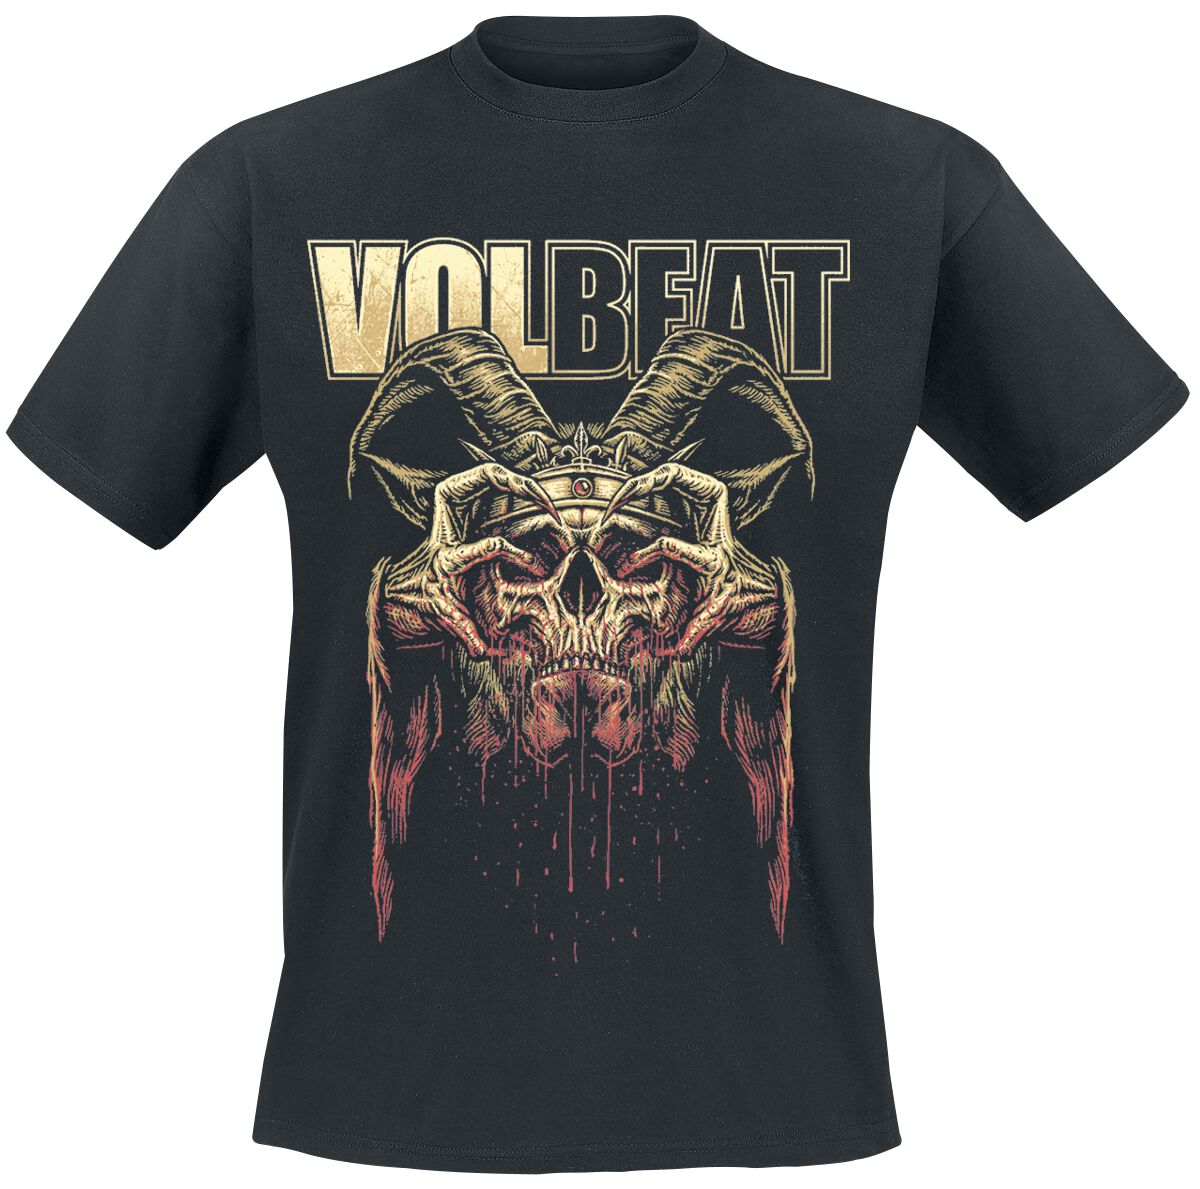 Volbeat T-Shirt - Bleeding Crown Skull - S bis 4XL - für Männer - Größe XXL - schwarz  - EMP exklusives Merchandise!